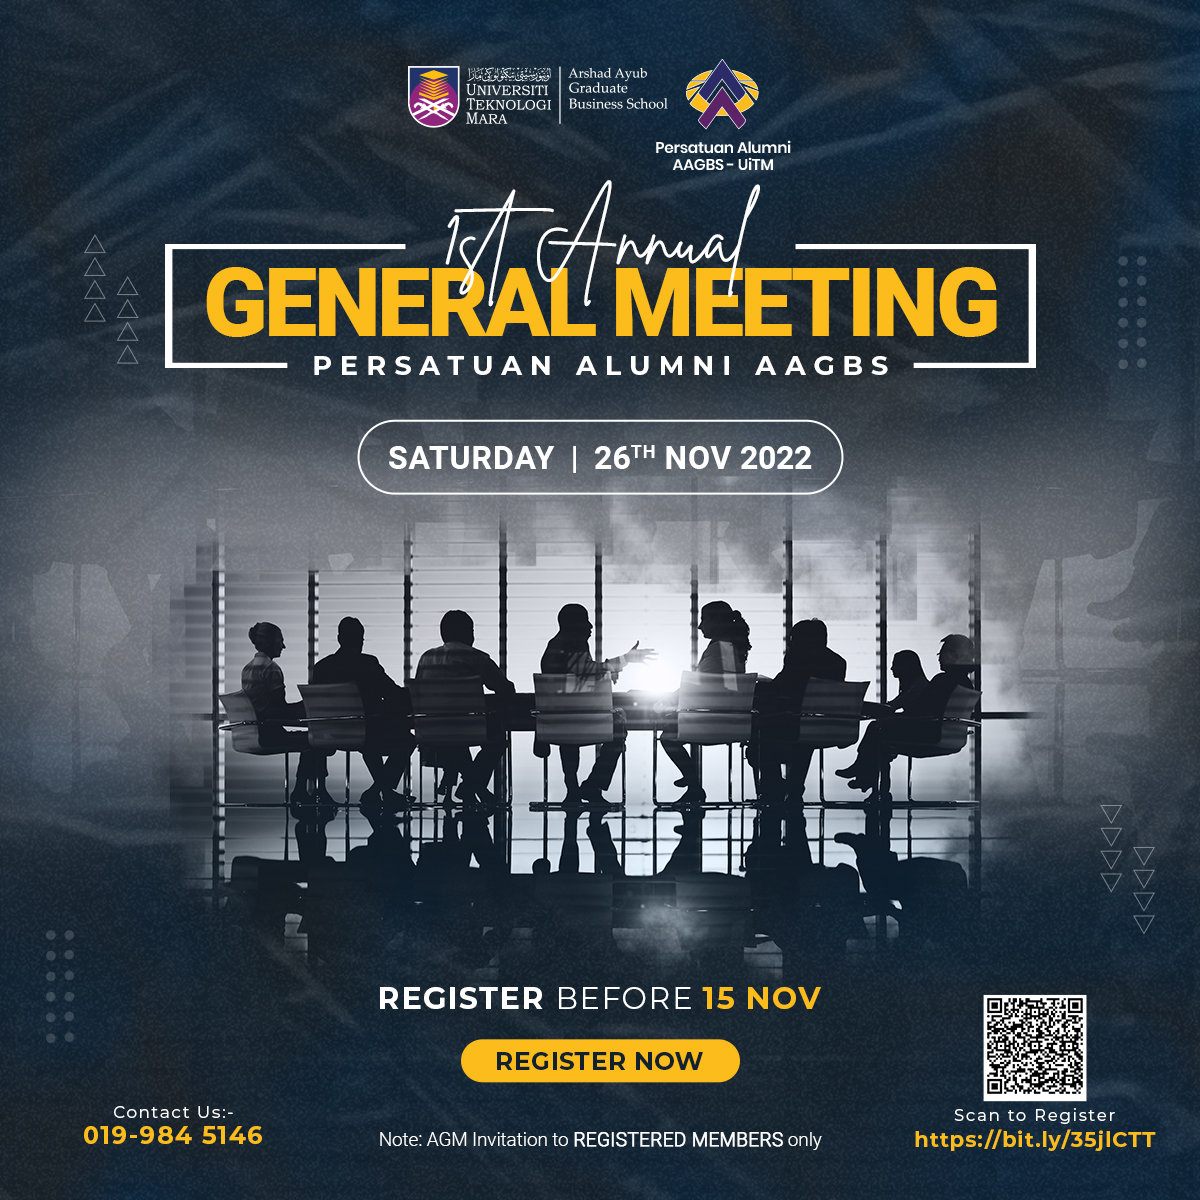 1st Annual General Meeting (AGM) - Persatuan Alumni AAGBS UiTM